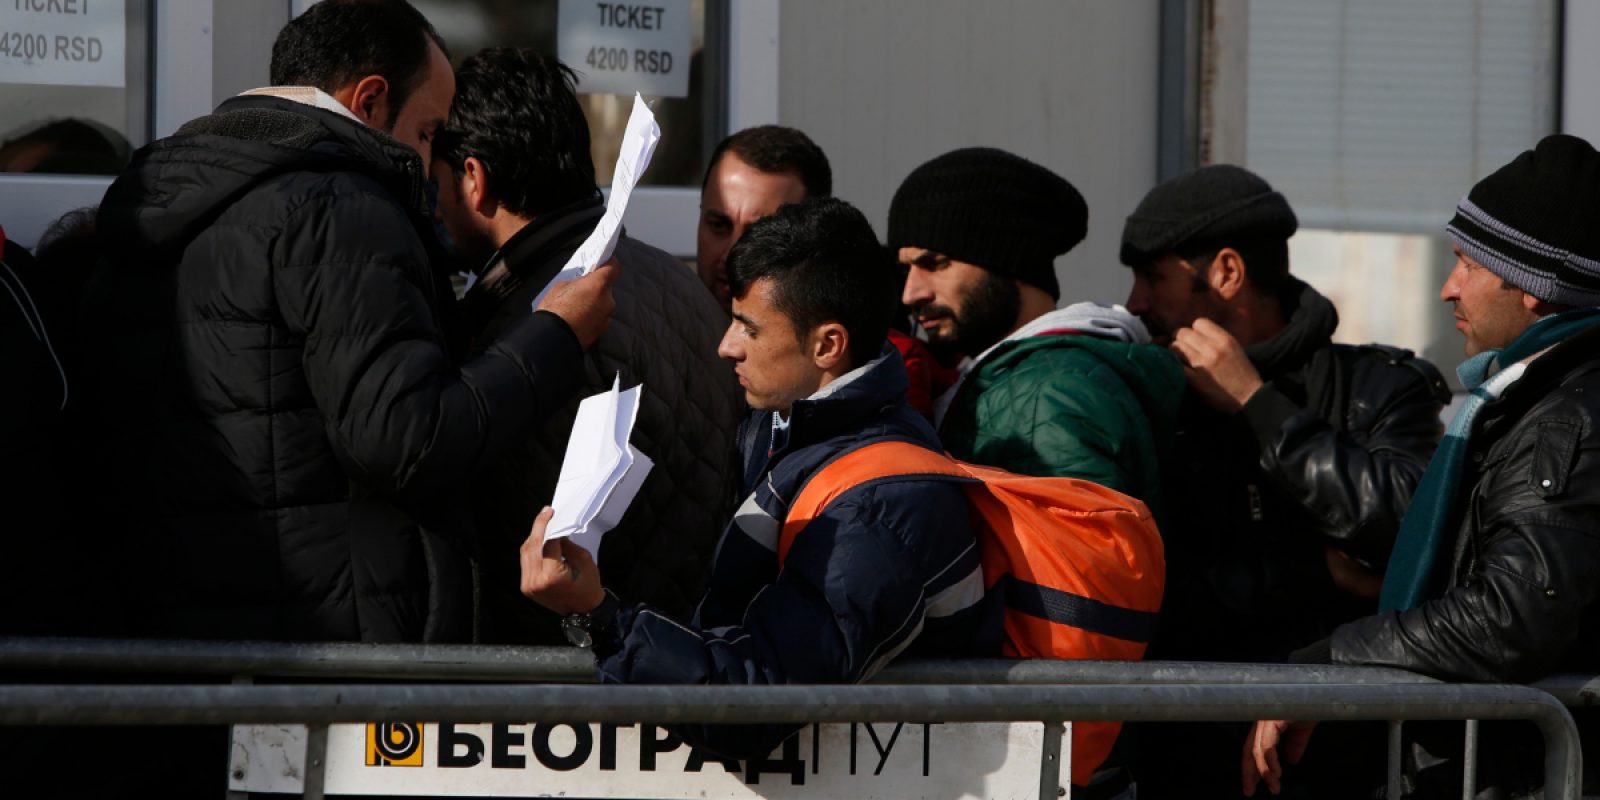 Migrantes y refugiados hacen cola para comprar el billete de autobús para continuar su viaje hacia el oeste de Europa desde la frontera entre Macedonia y Serbia. (Darrin Zammit Lupi / Servicio Jesuita a Refugiados)